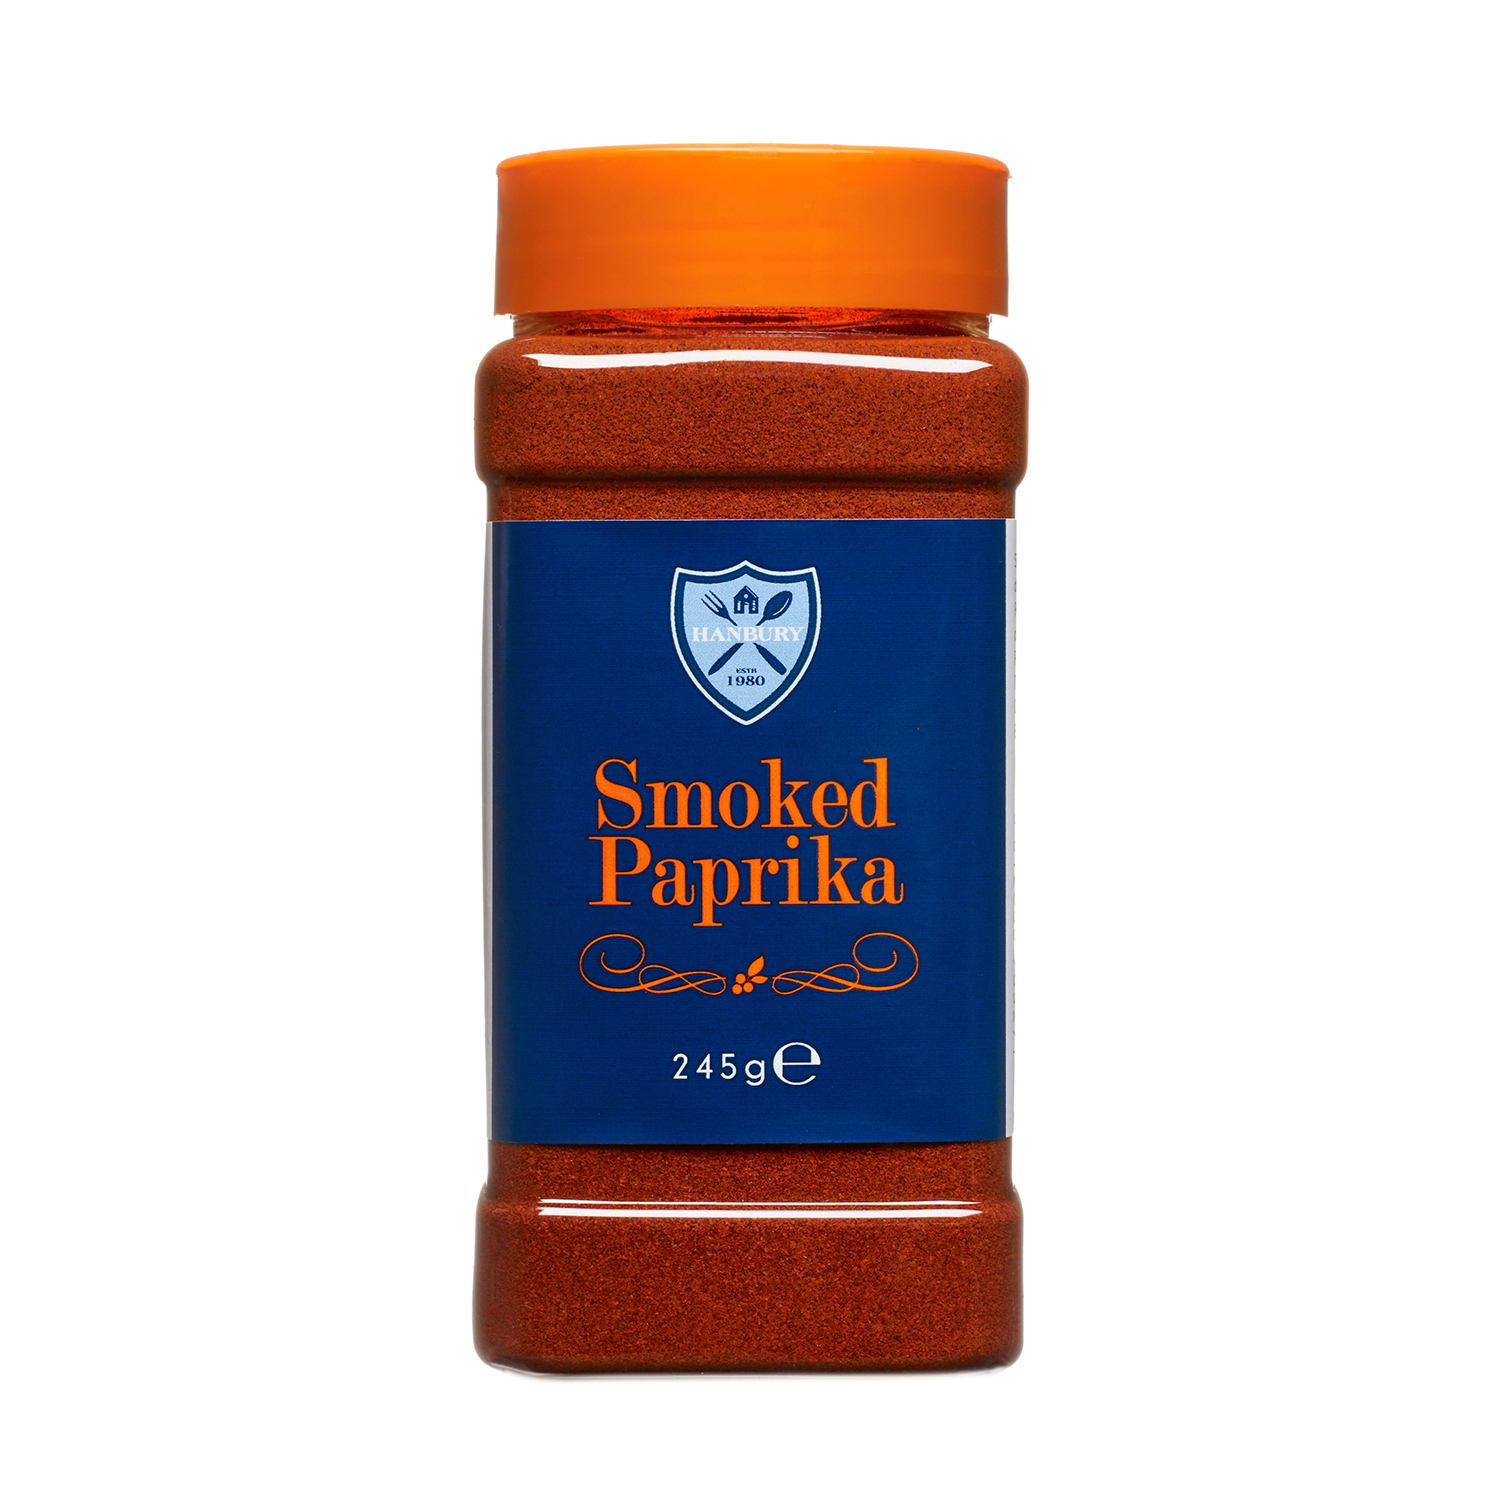 Hanbury Sweet Smoked Paprika Image